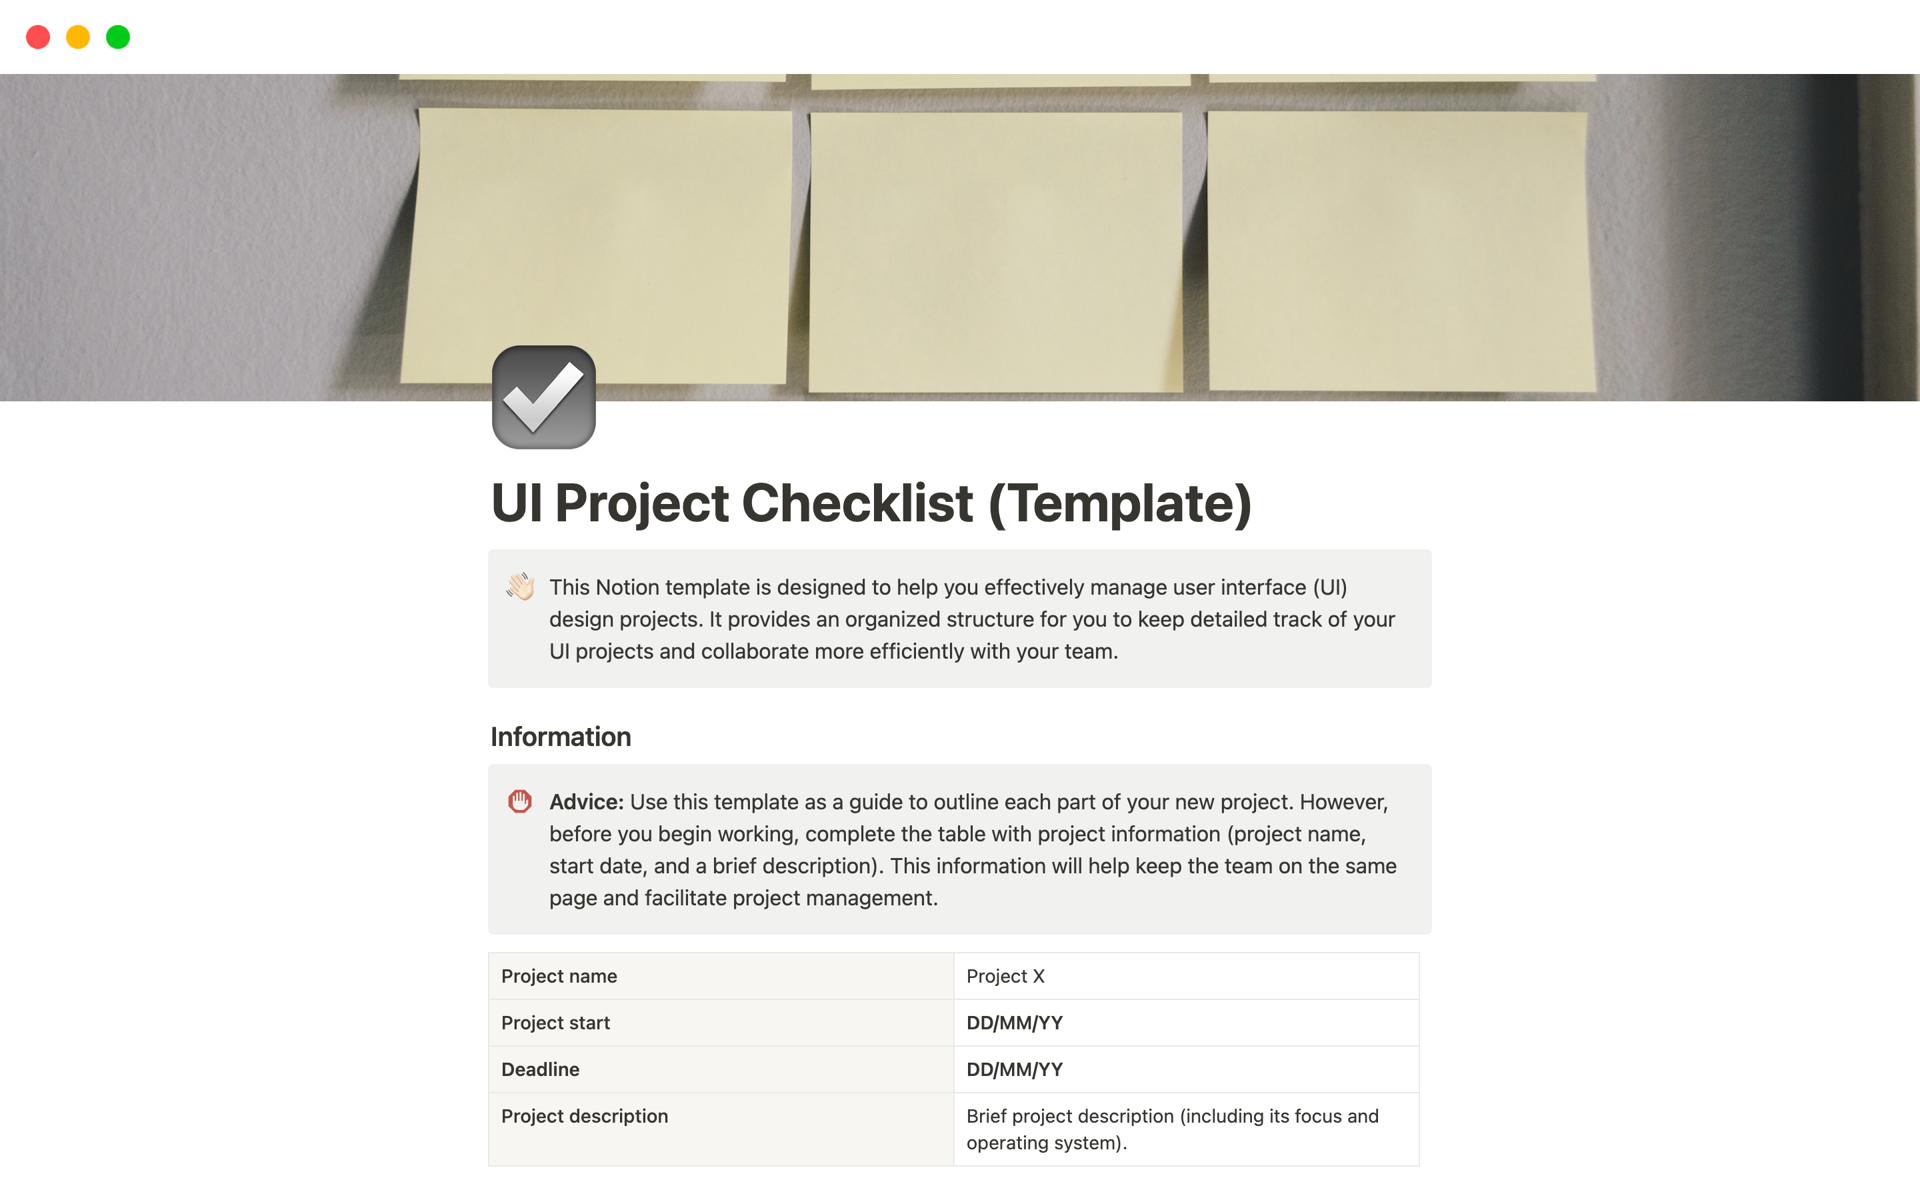 Uma prévia do modelo para UI Project Checklist